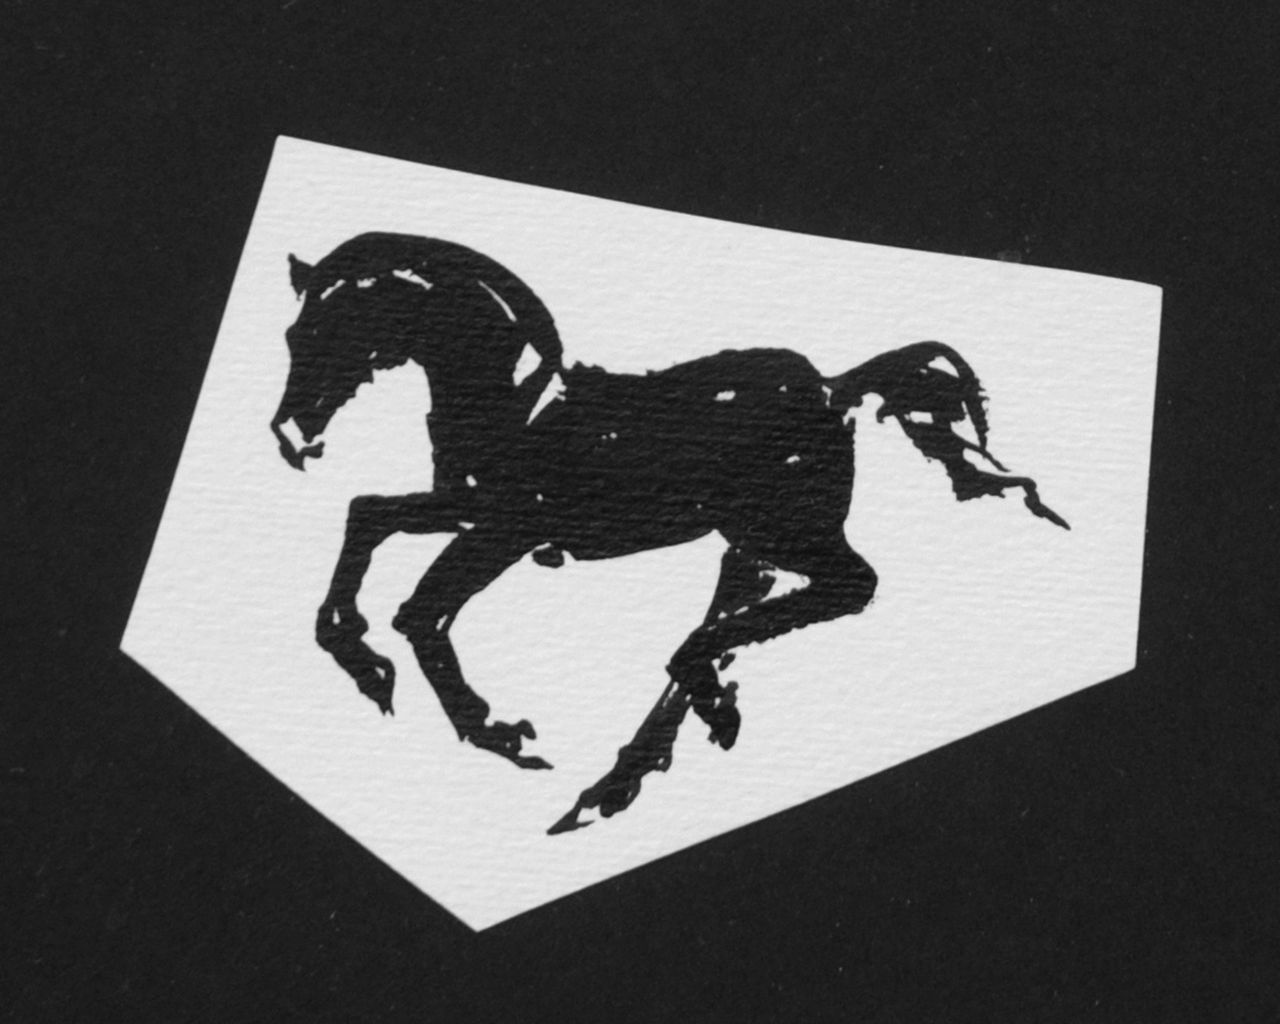 Oranje-Nassau (Prinses Beatrix) B.W.A. van | Beatrix Wilhelmina Armgard van Oranje-Nassau (Prinses Beatrix), Galloping horse, Bleistift und Ausziehtusche auf Papier 7,3 x 8,2 cm, executed August 1960